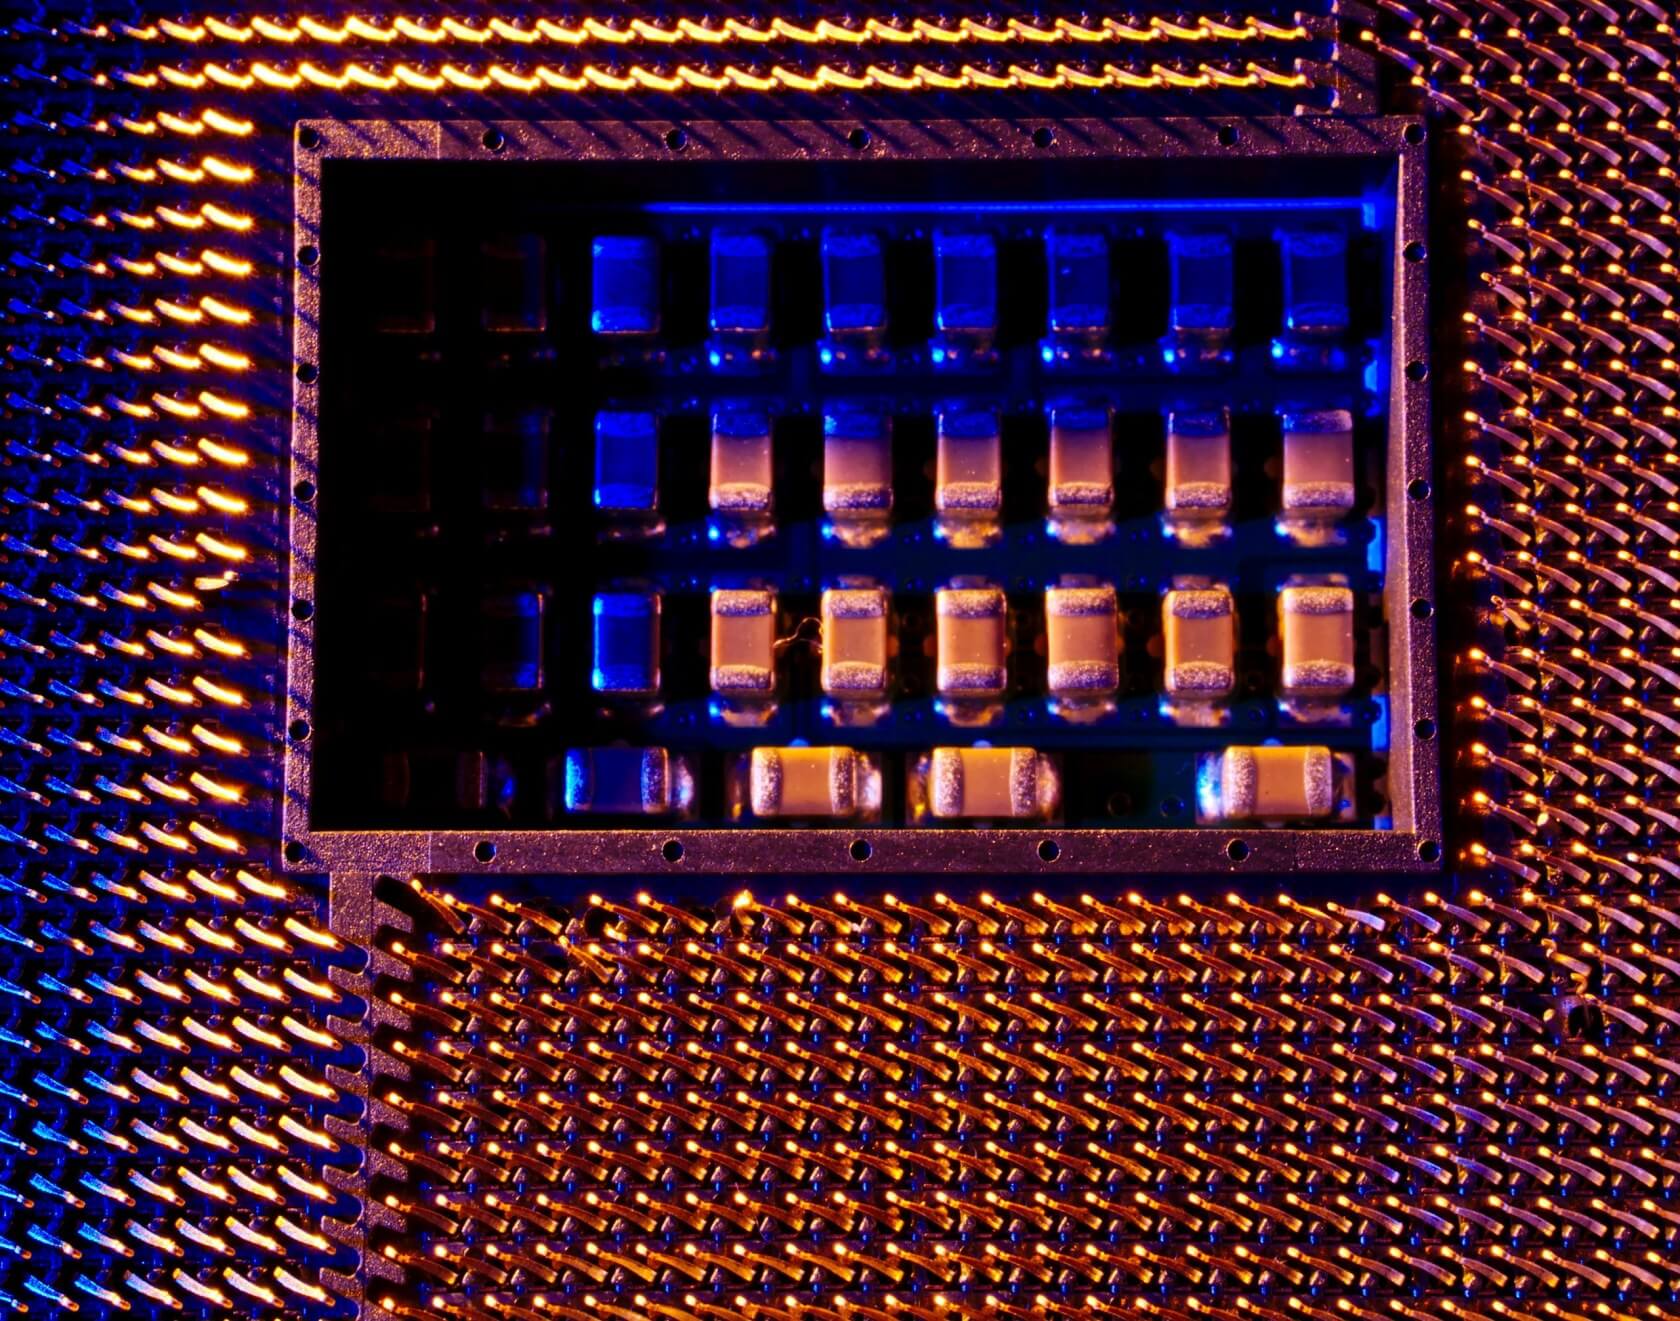 AMD desenvolveu uma APU de 8 núcleos